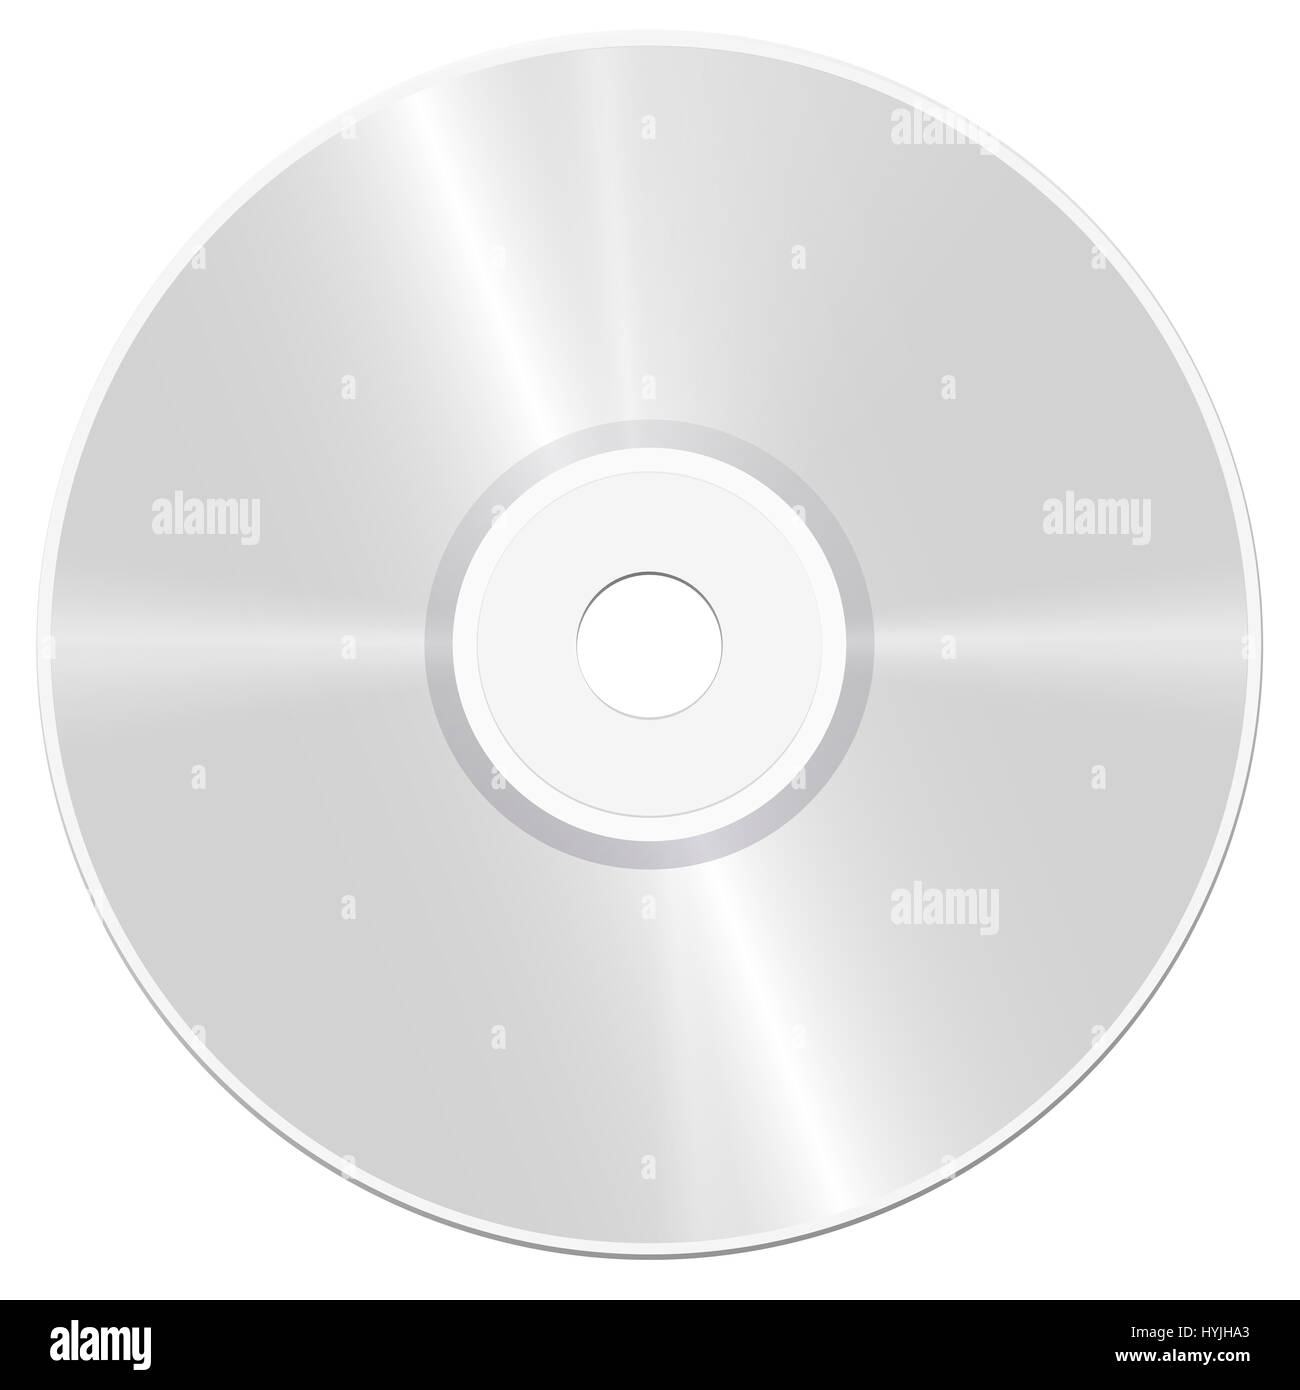 CD - Acronimo di compact disc - realistico illustrazione isolato su sfondo bianco. Foto Stock